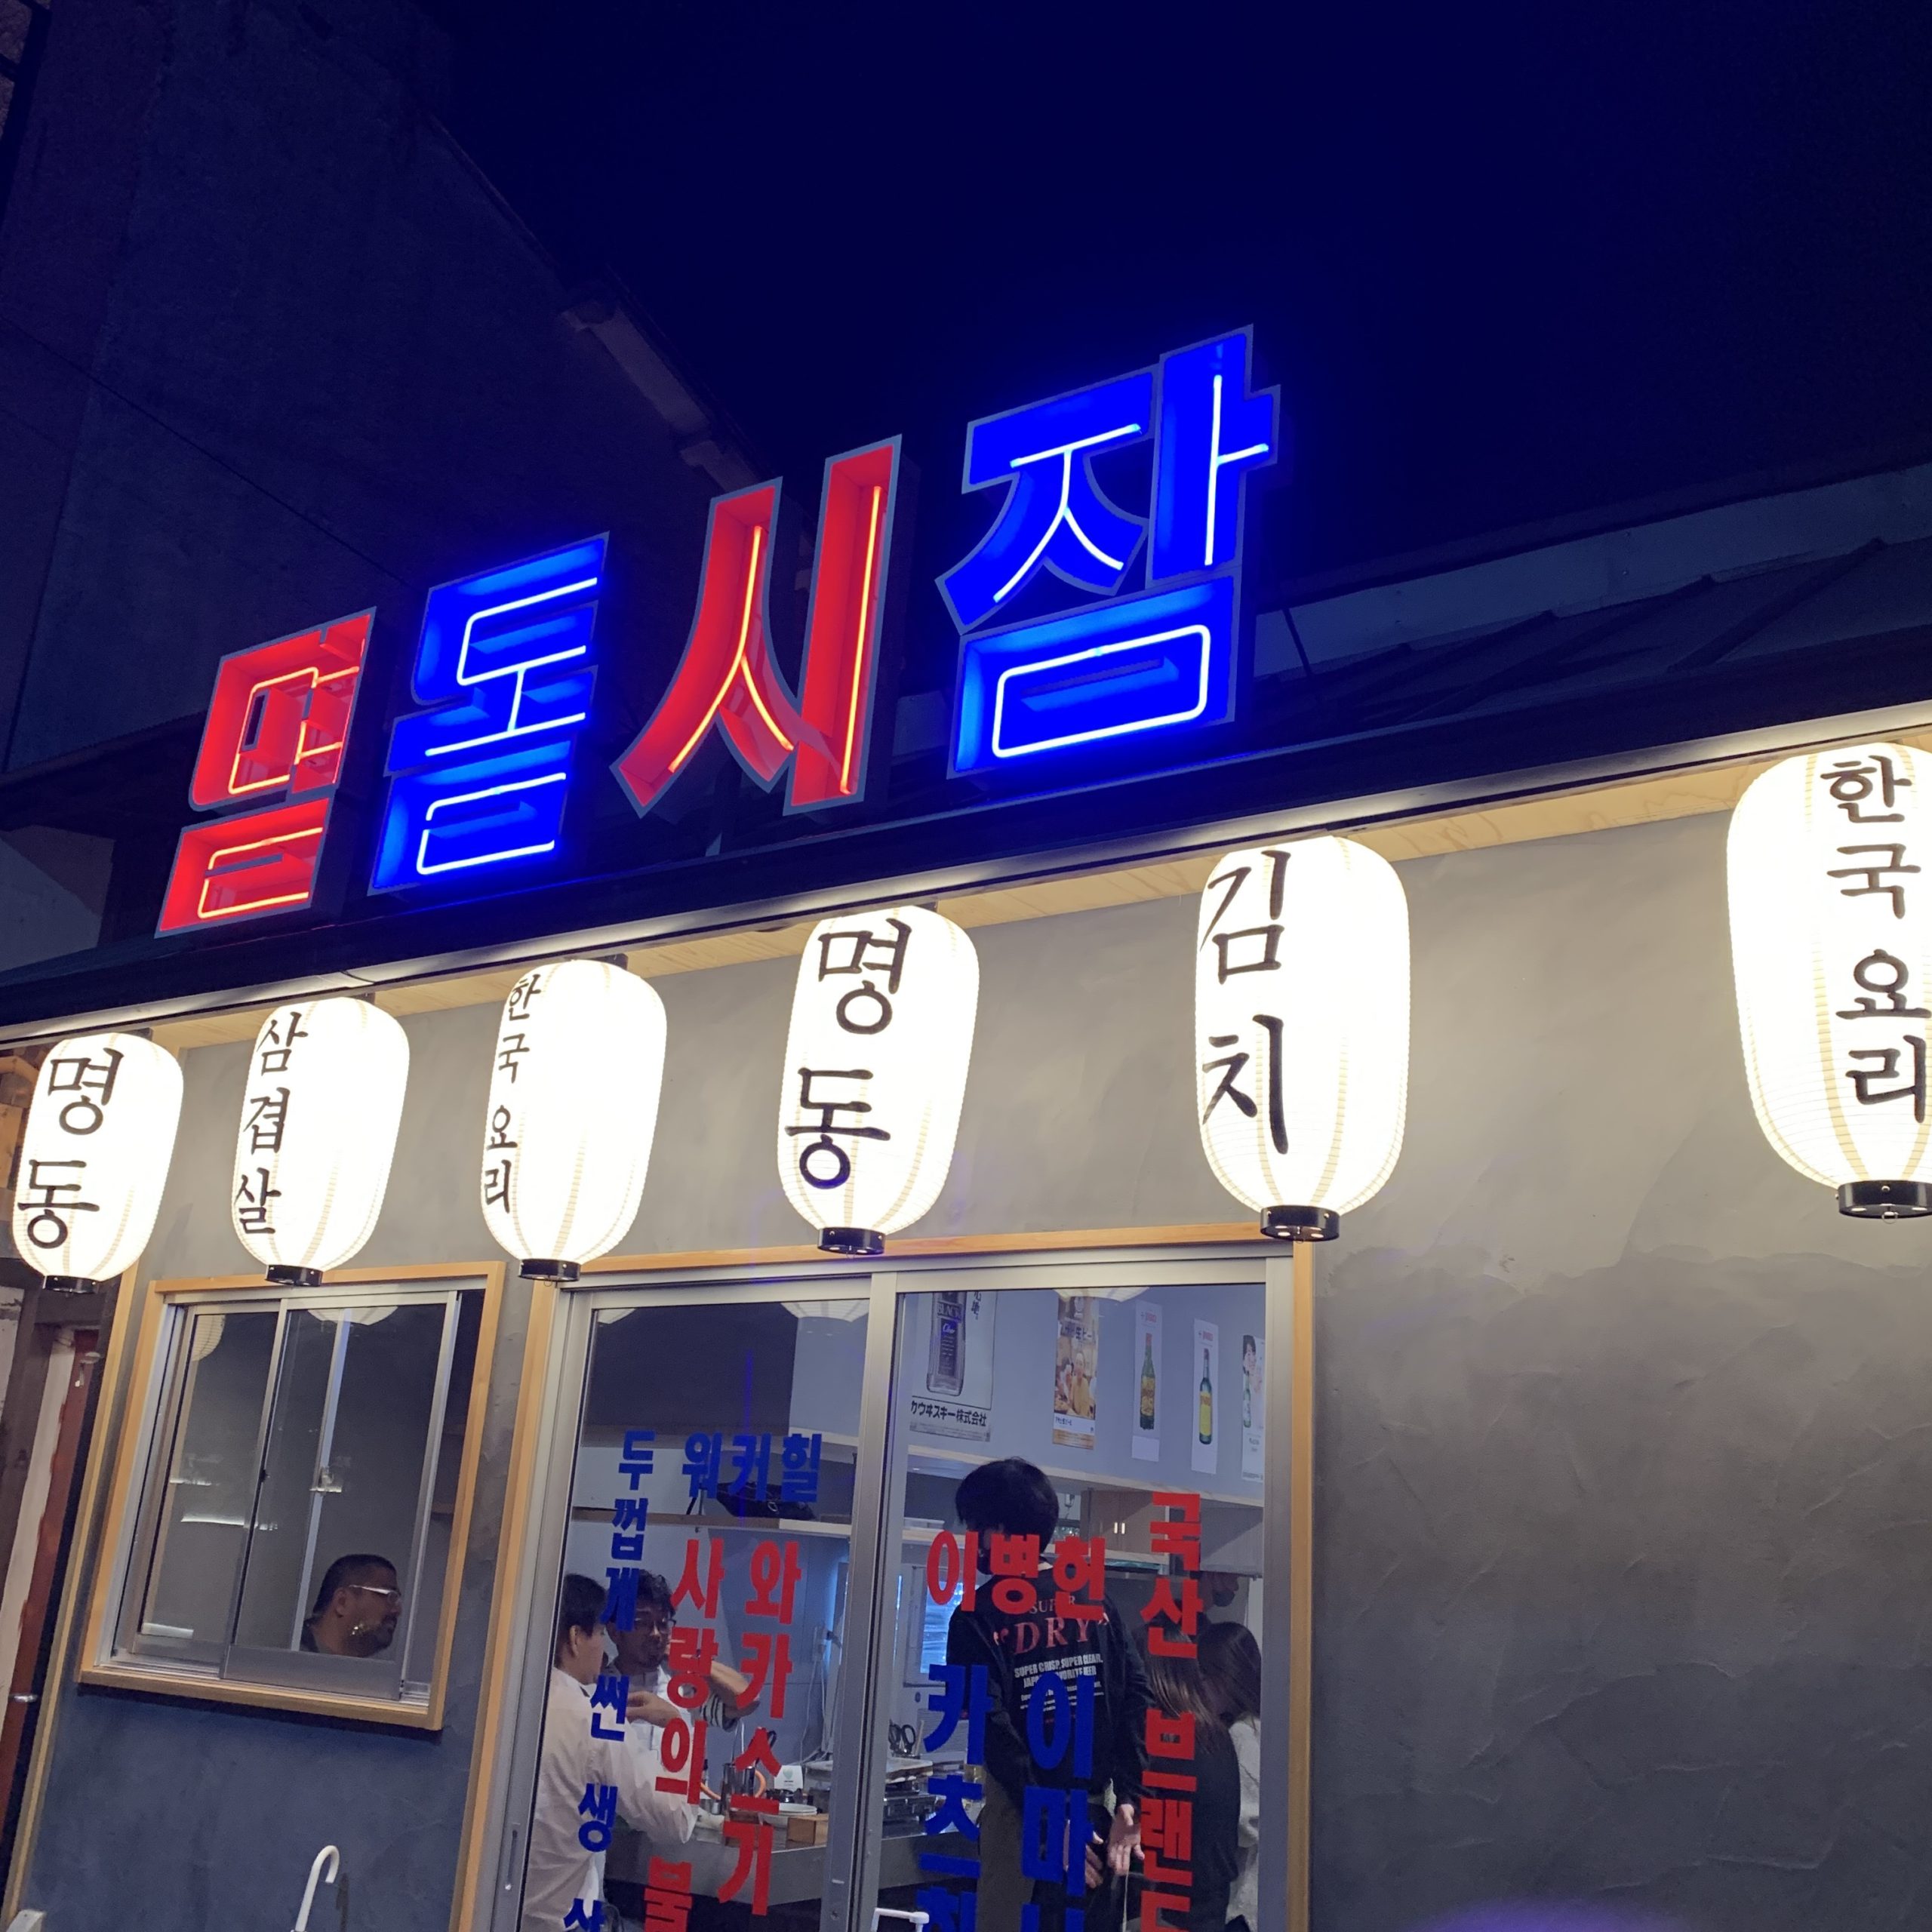 明洞市場はサムギョプサルと韓国料理のお店だよ【三田駅前の新店舗】 | 三田の梅さん ~Sanda Portal~※非公式